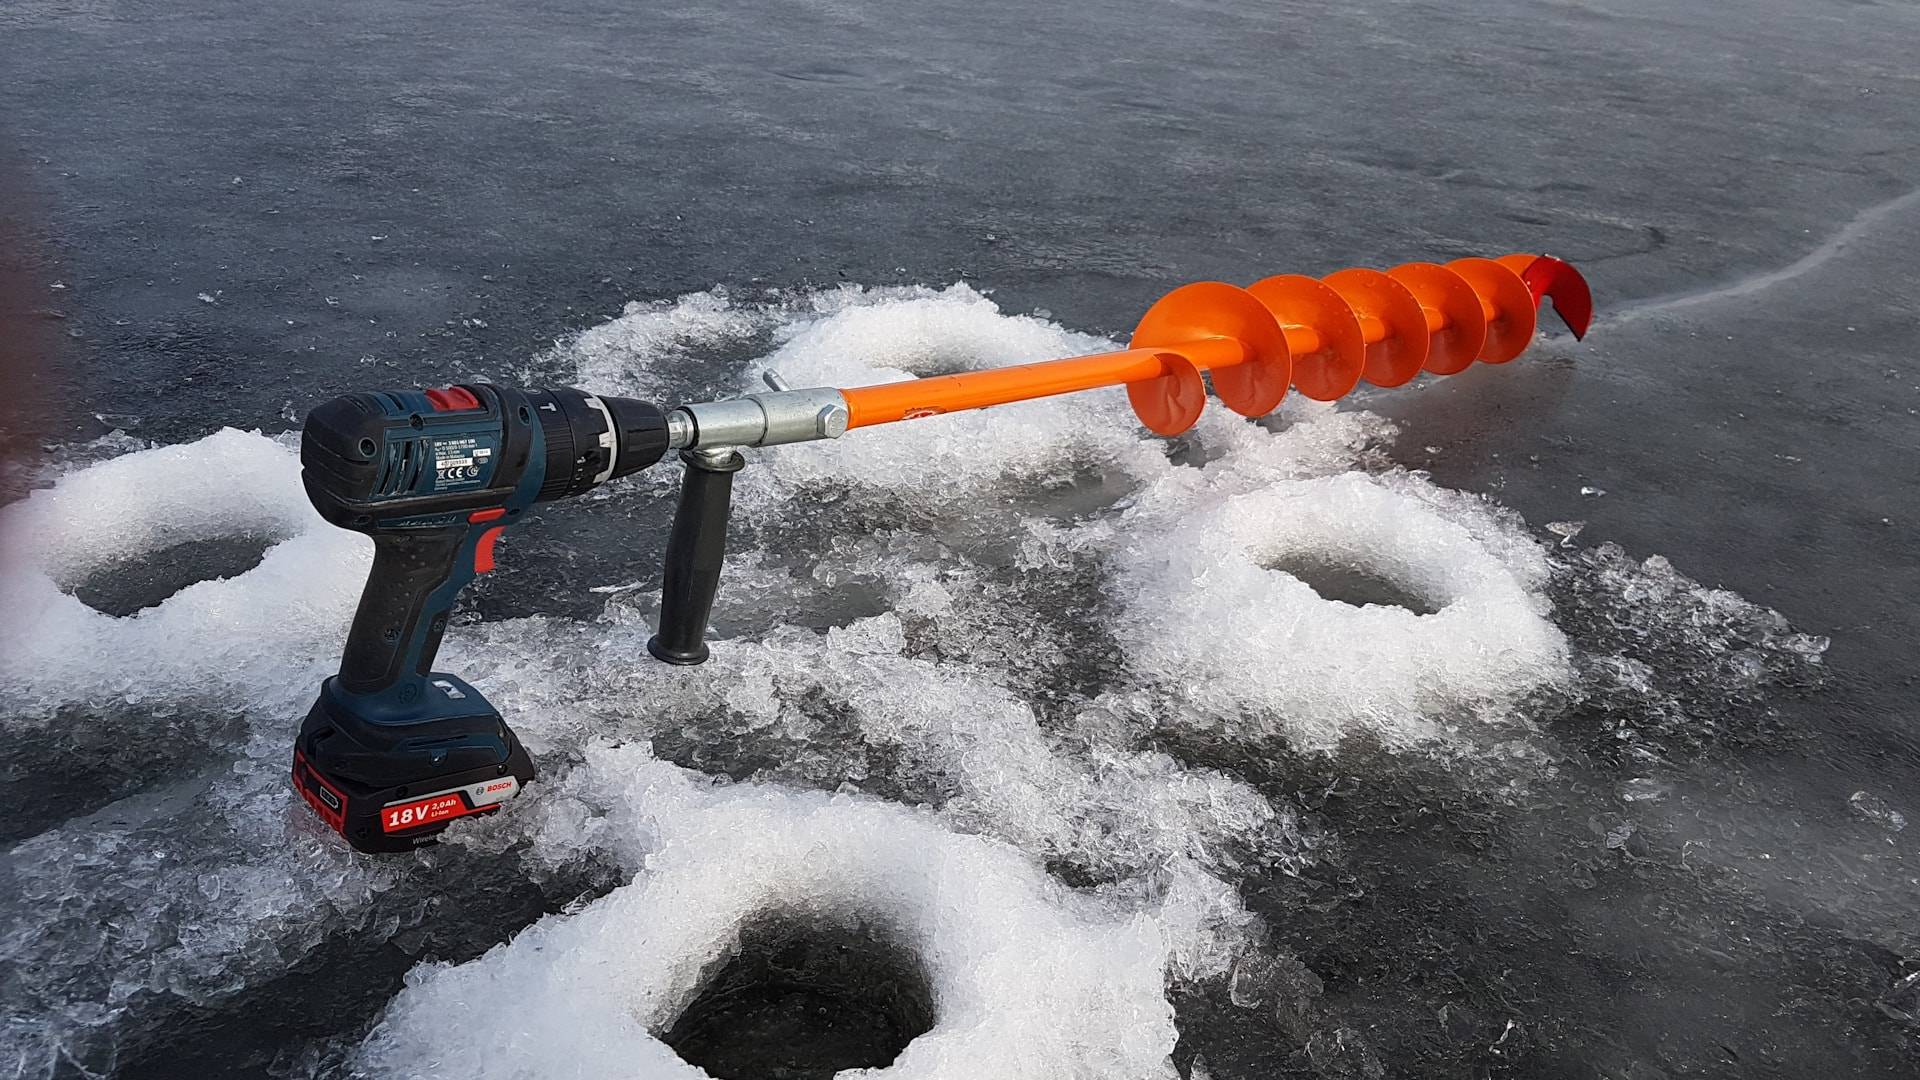 Лучшие шуруповерты для ледобура 2021 года: рейтинг мощных аккуиуляторных шуруповертов 18 вольт для бурения льда на зимней рыбалке